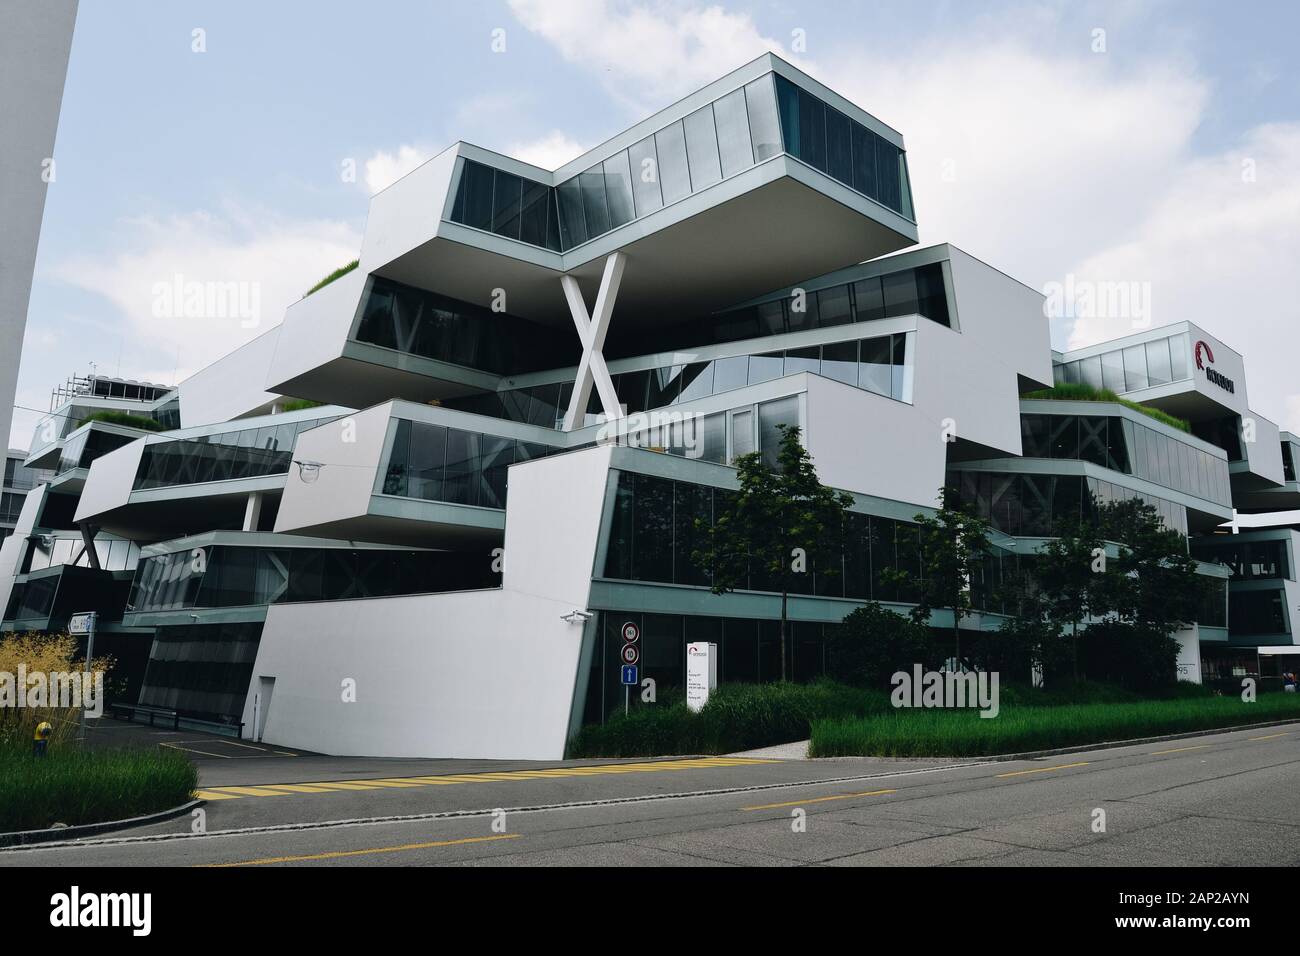 Actelion Business Center designed by Herzog & de Meuron Stock Photo